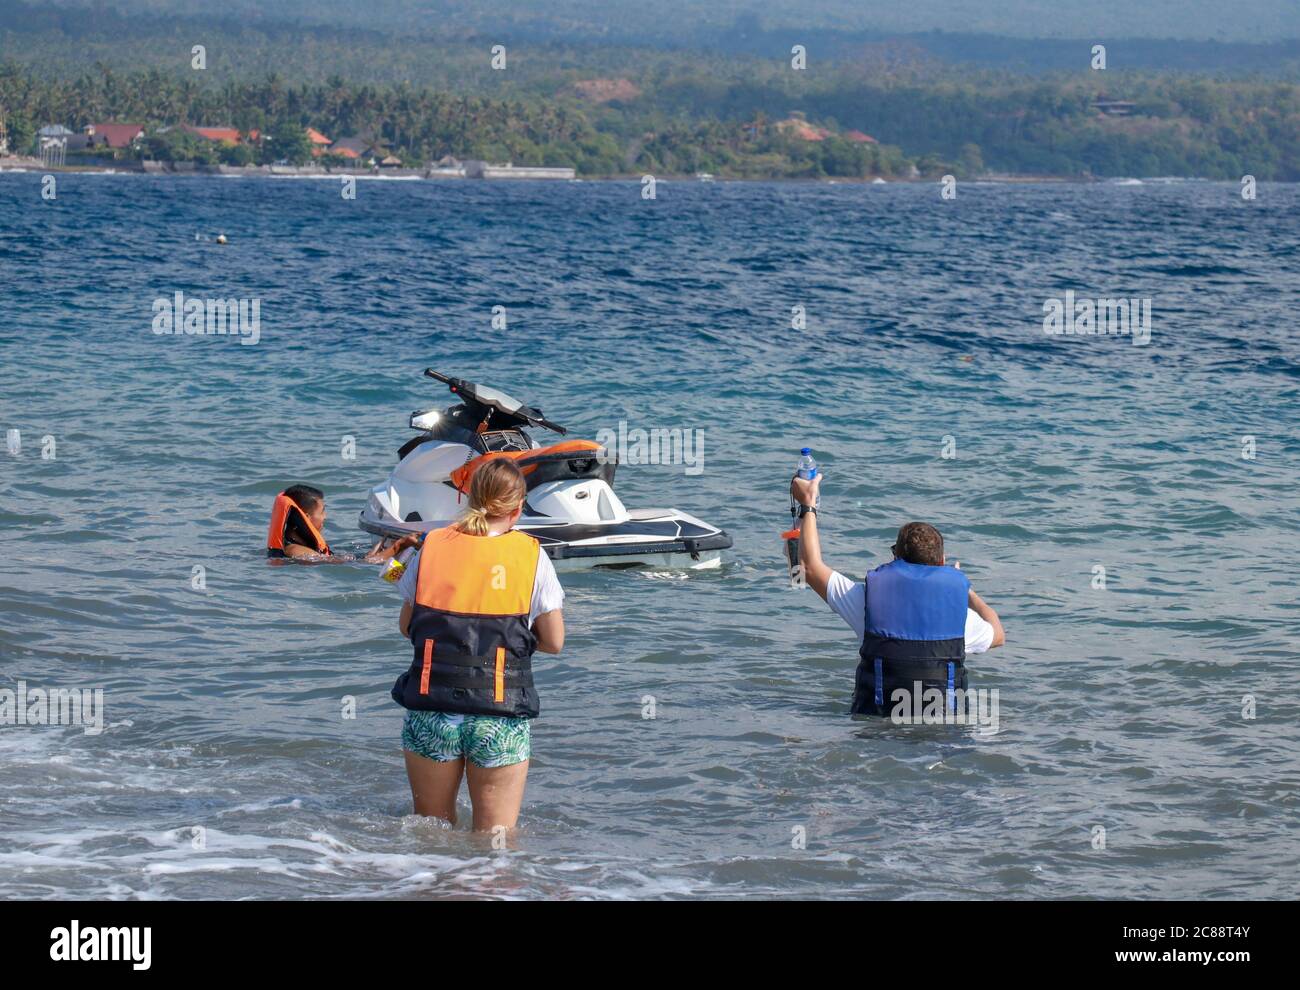 Les touristes aiment le jet ski en voiture sur l'océan. Un jeune couple fait un jet-bike Banque D'Images